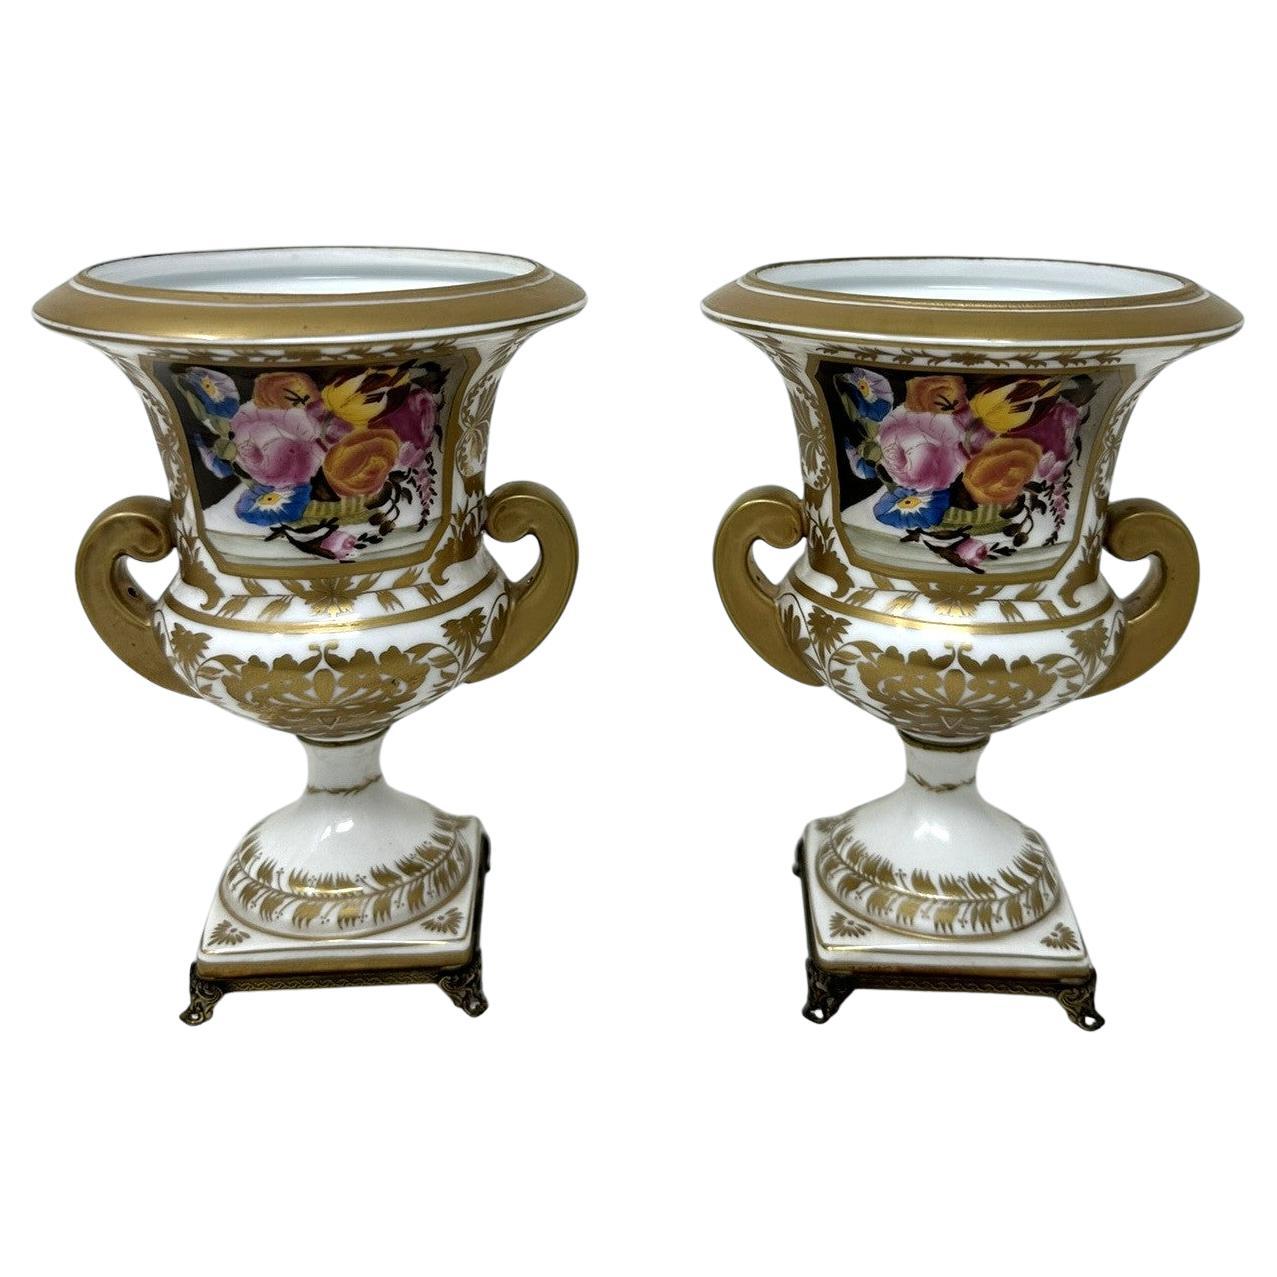 Ancienne paire de vases-urnes en porcelaine Campana édouardienne française, natures mortes et fleurs